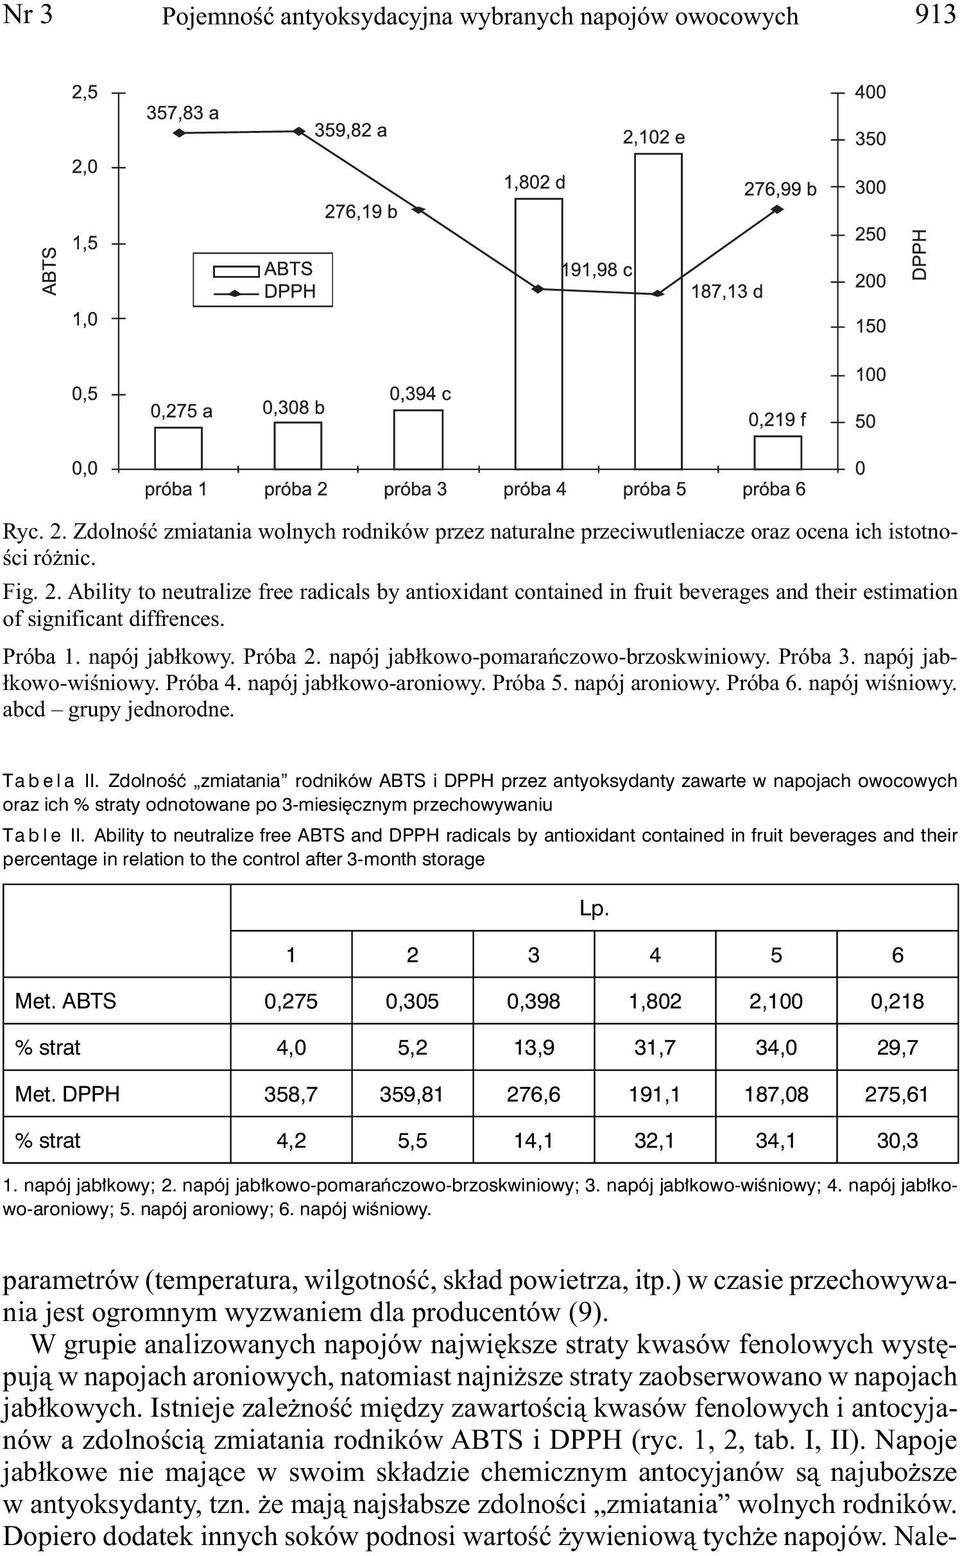 abcd grupy jednorodne. Tabela II. Zdolność zmiatania rodników ABTS i DPPH przez antyoksydanty zawarte w napojach owocowych oraz ich % straty odnotowane po 3-miesięcznym przechowywaniu Table II.